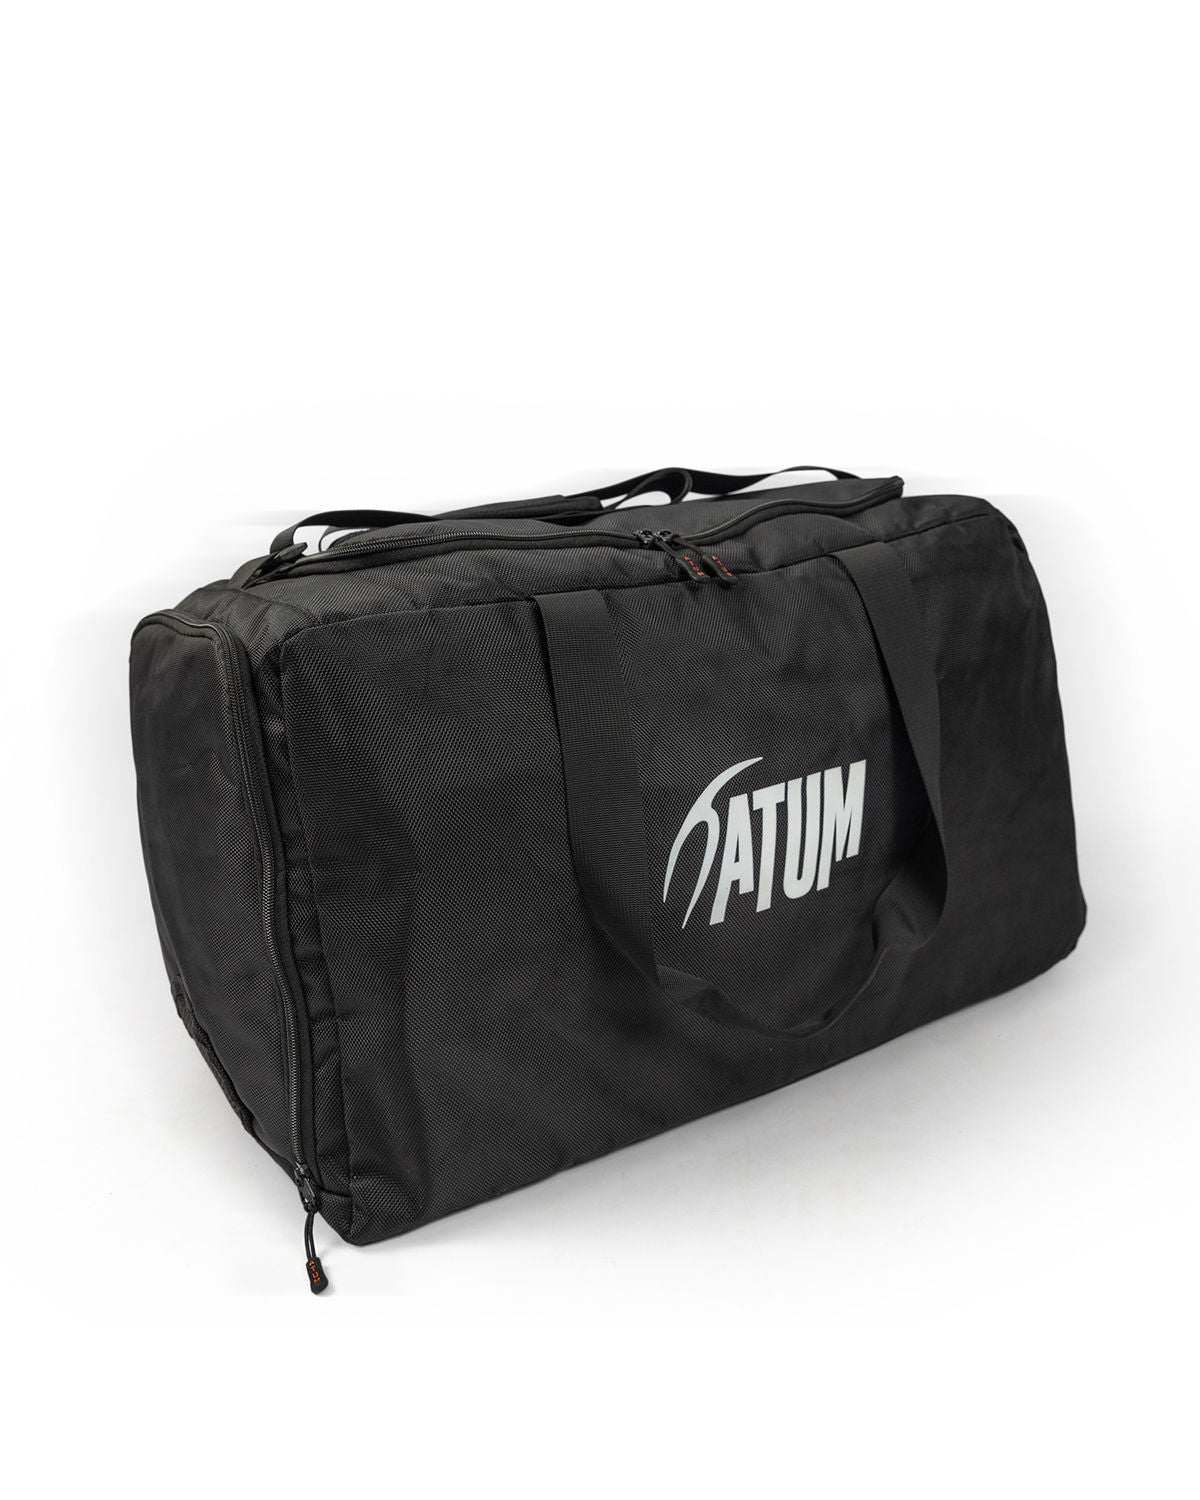 Atum's training duffel bag